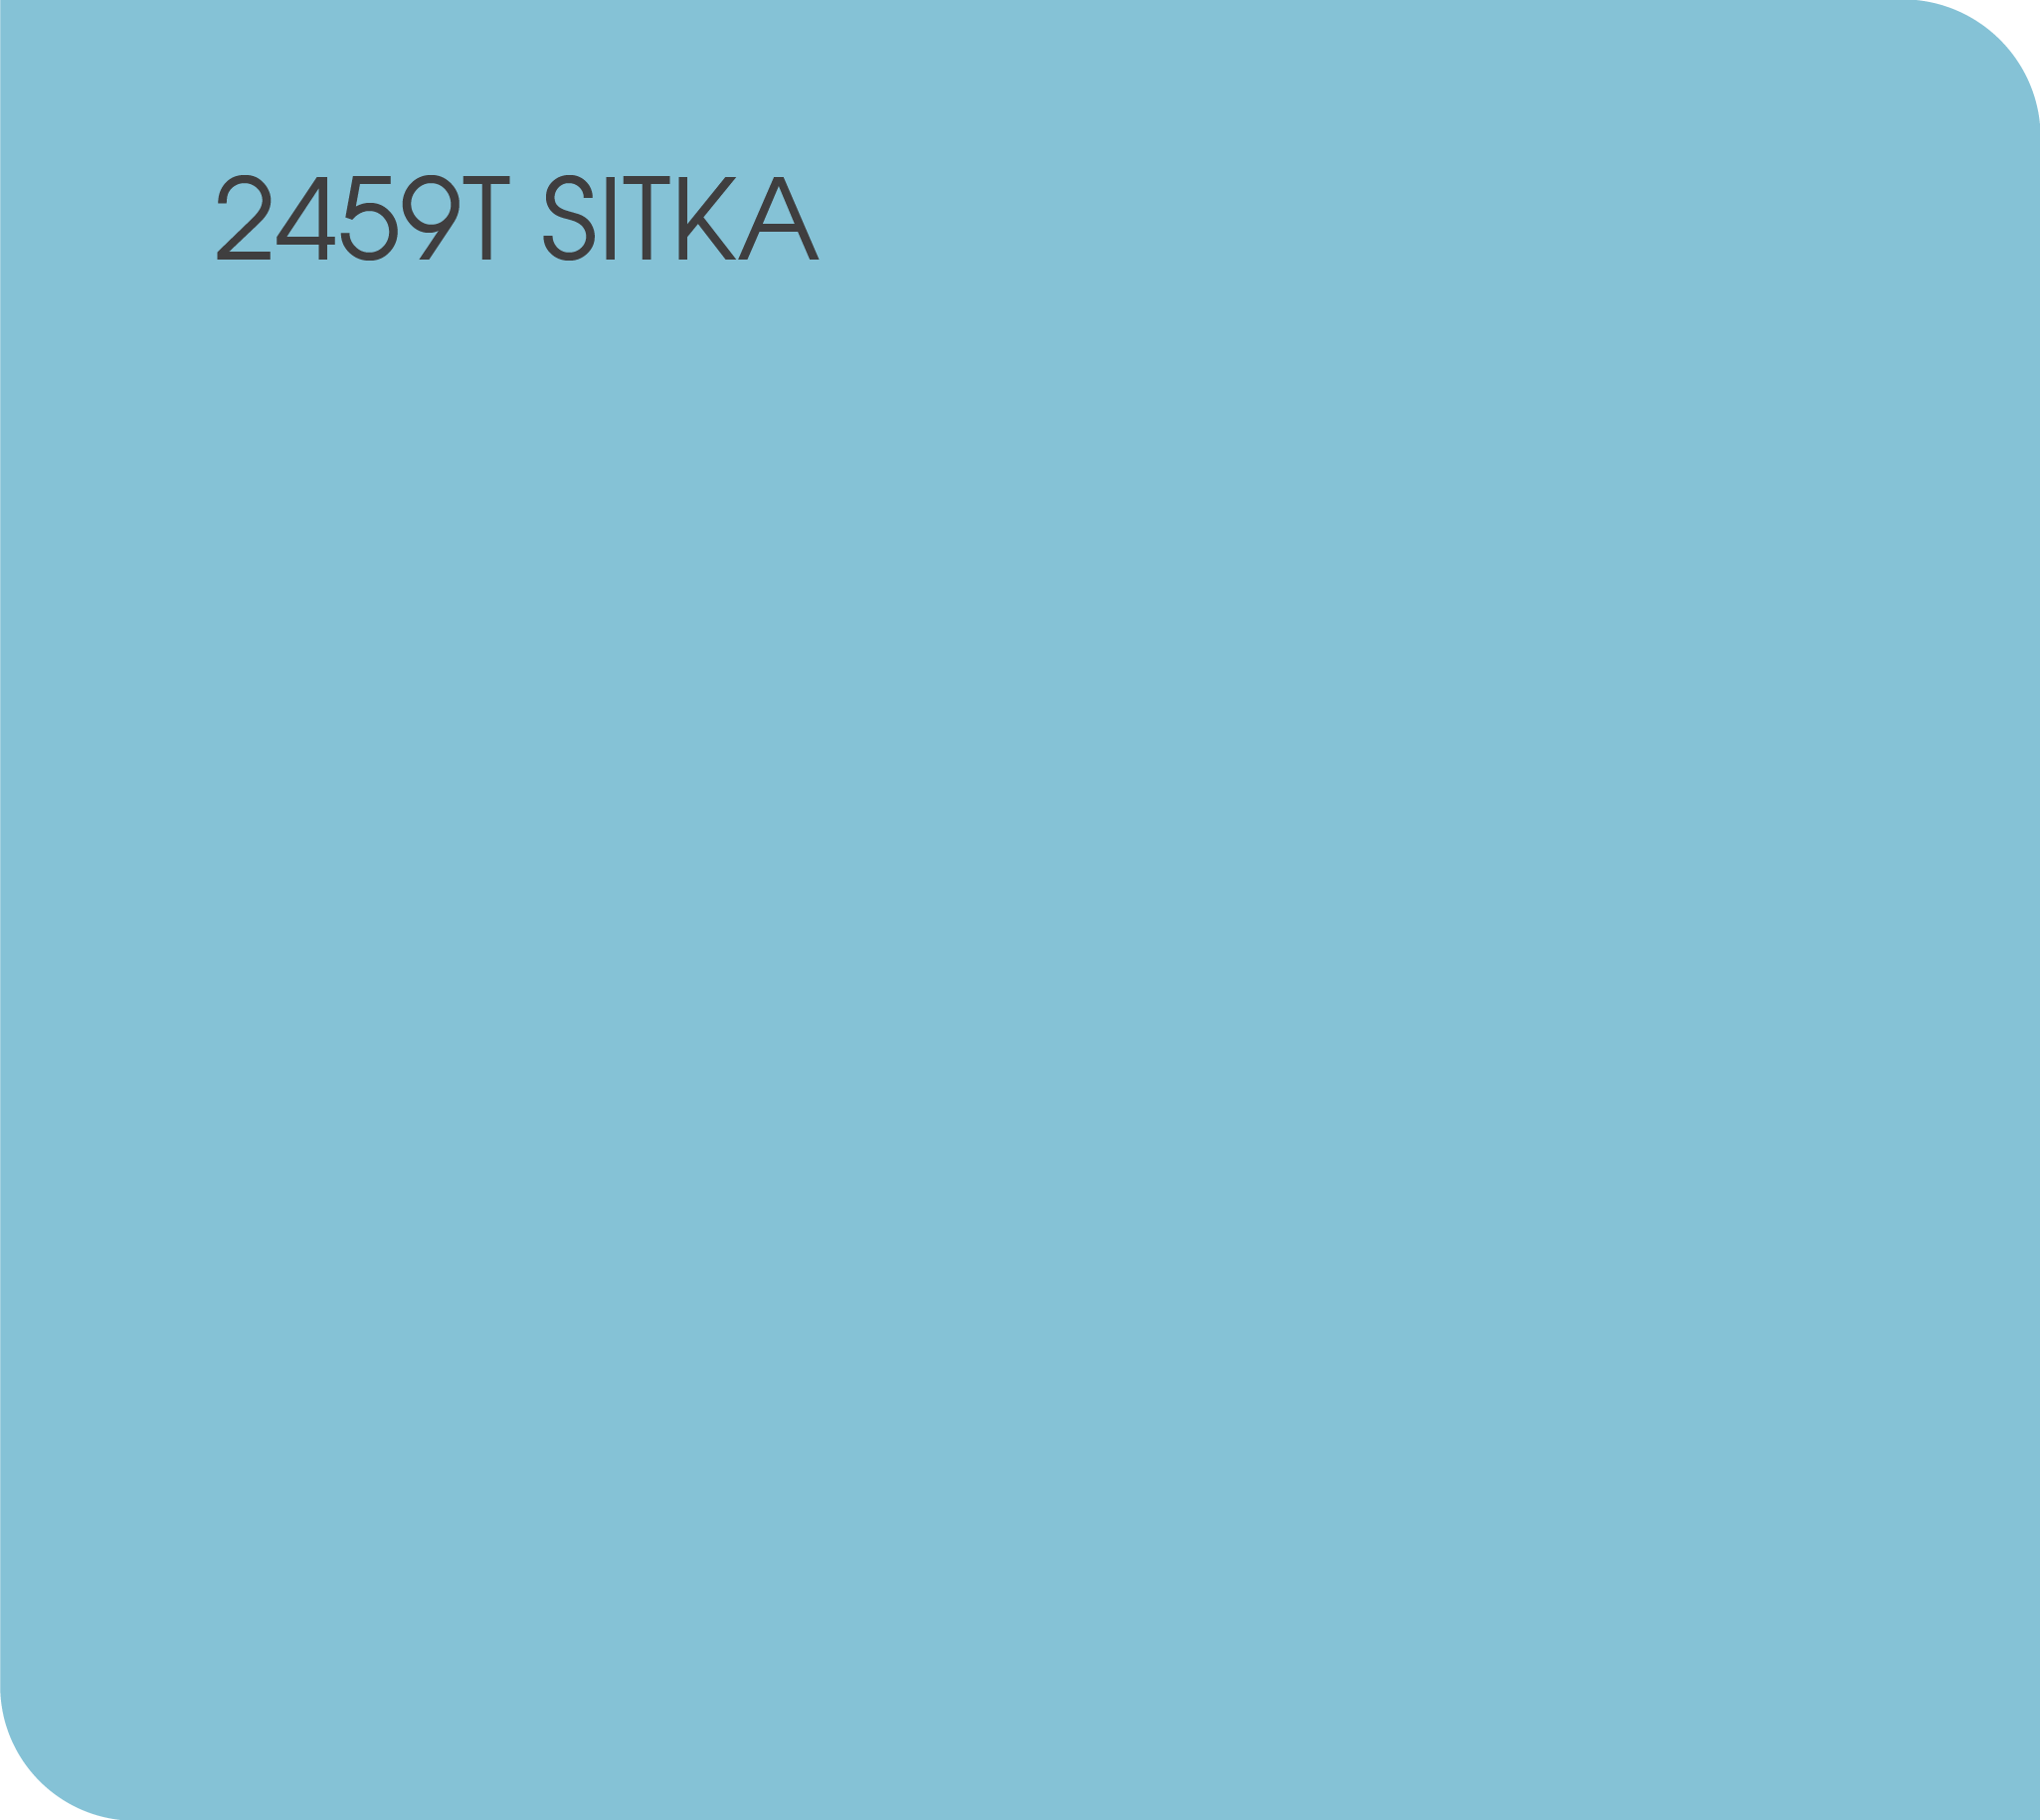 2459T sitka